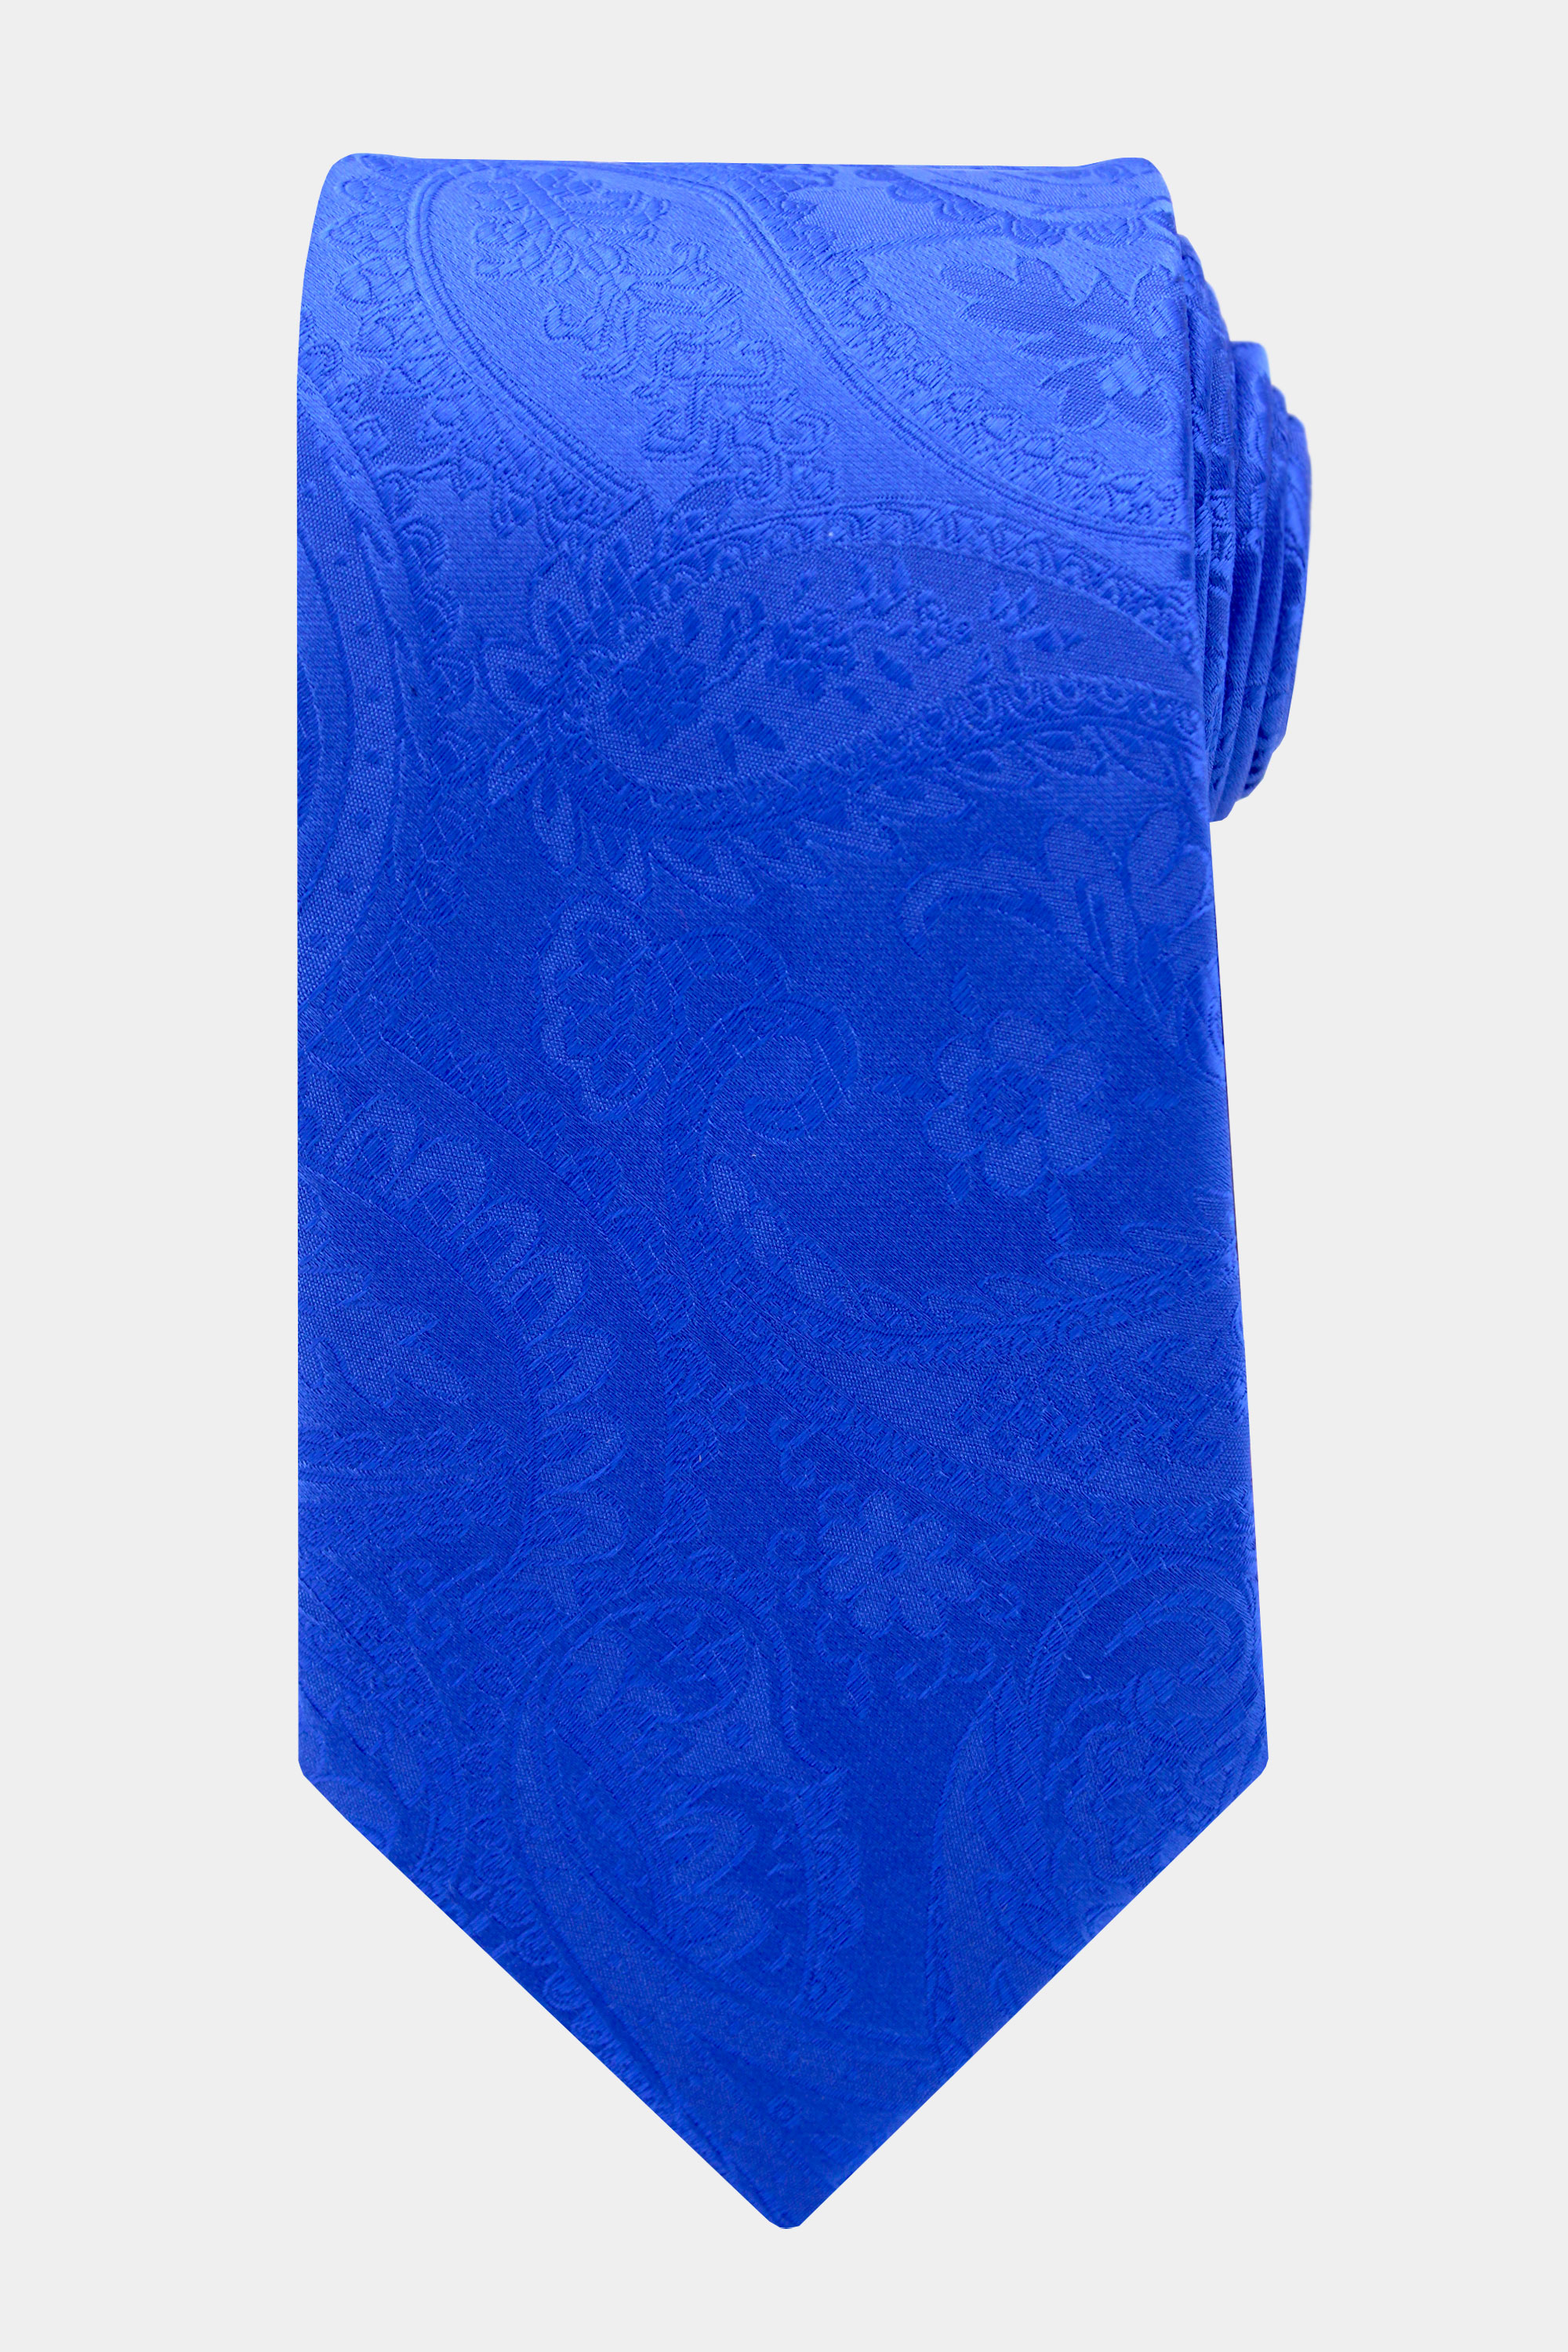 Royal-Blue-Tie-Wedding-Groom-from-Gentlemansguru.com